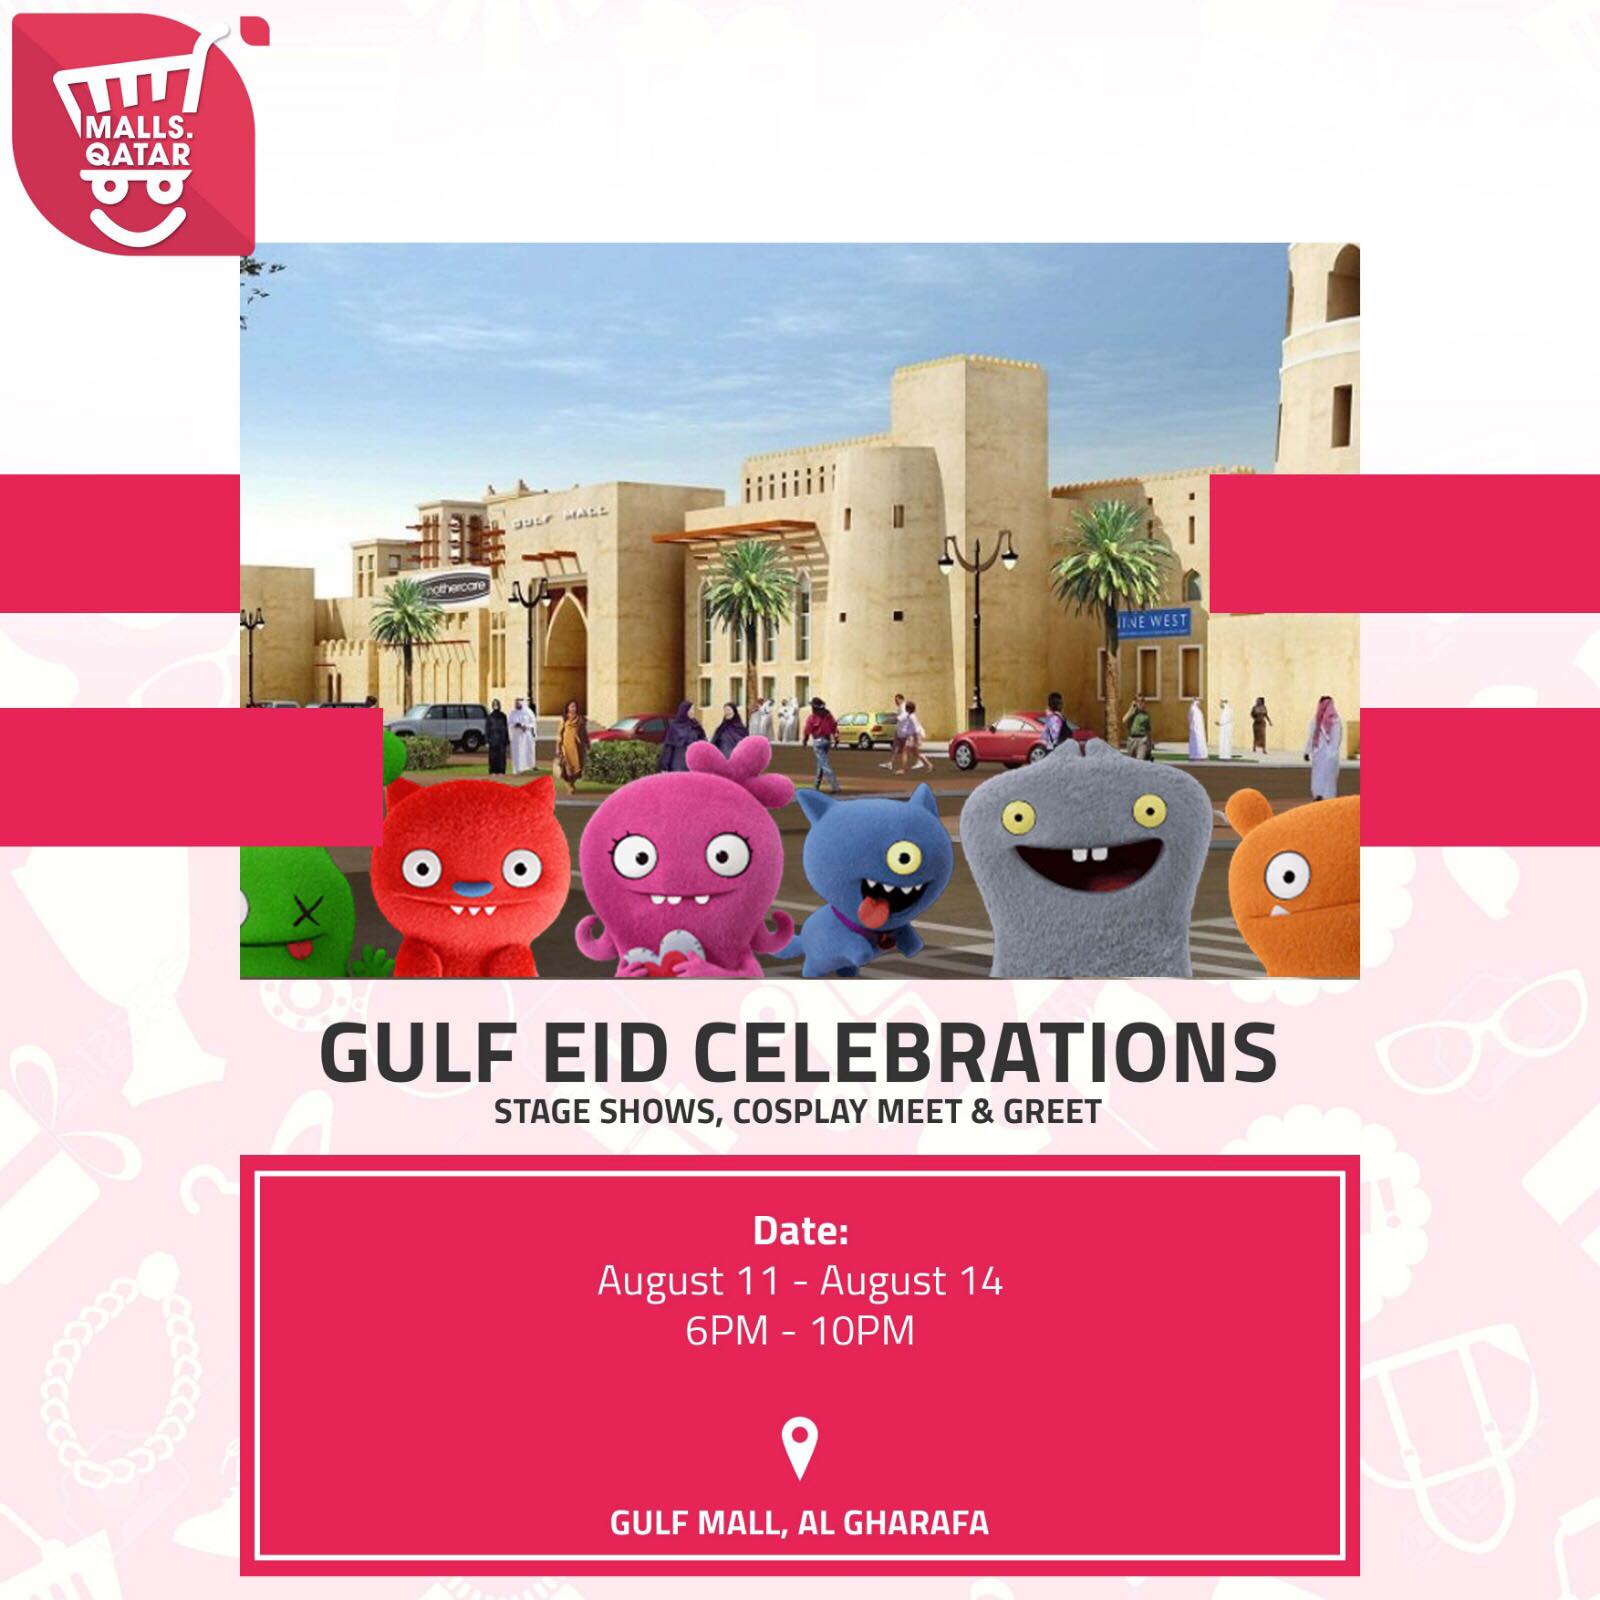 Eid Celebrations in Qatar